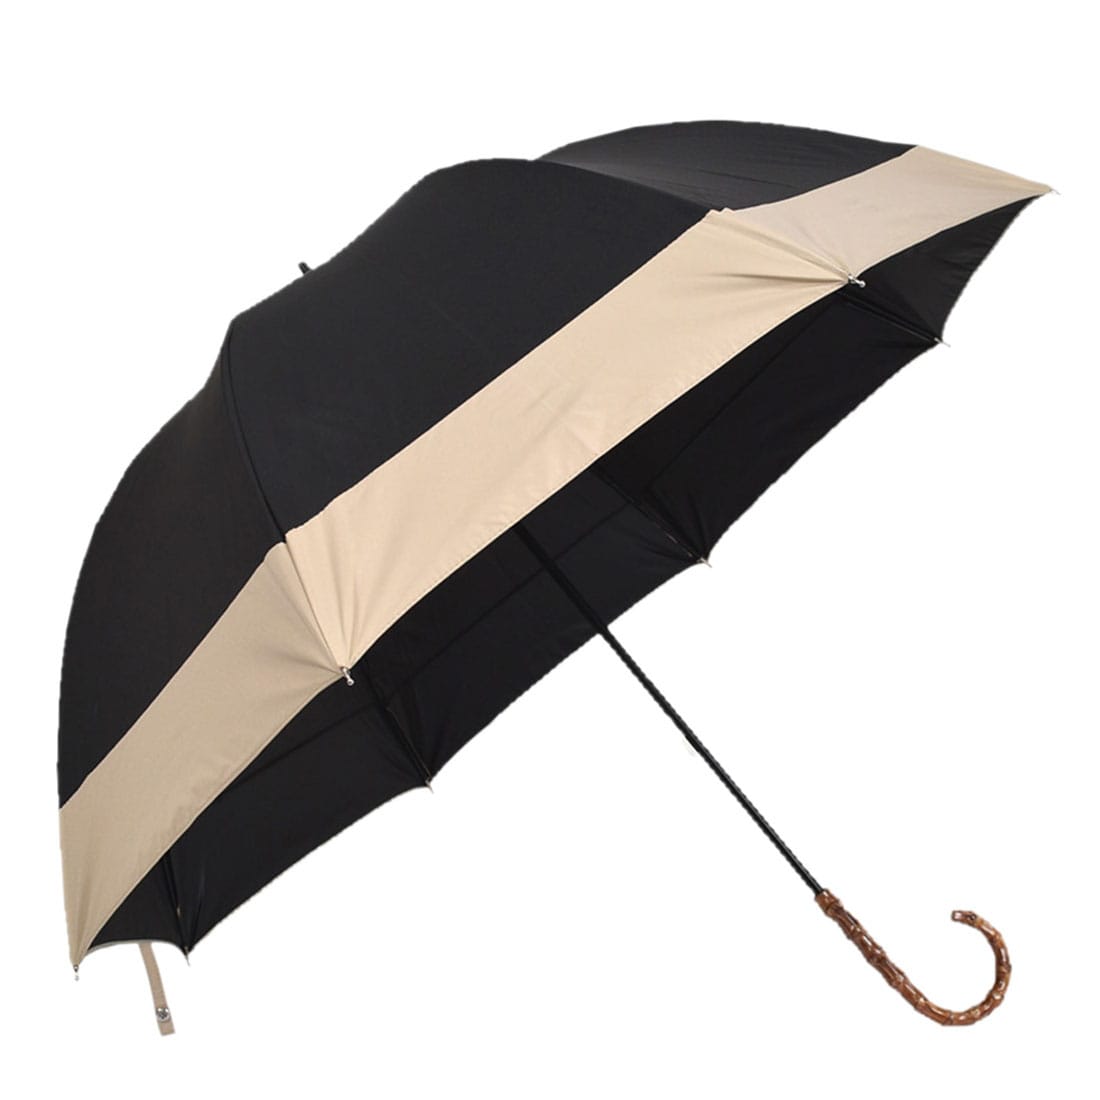 晴雨兼用 日傘 雨傘 because 長傘 PUバイカラーラージ 55cm 全3色 暑さ 熱中症 日焼け 紫外線 UV 対策 撥水 防水 おしゃれ 通年用 大人 レディース 女性 55cm ブラック